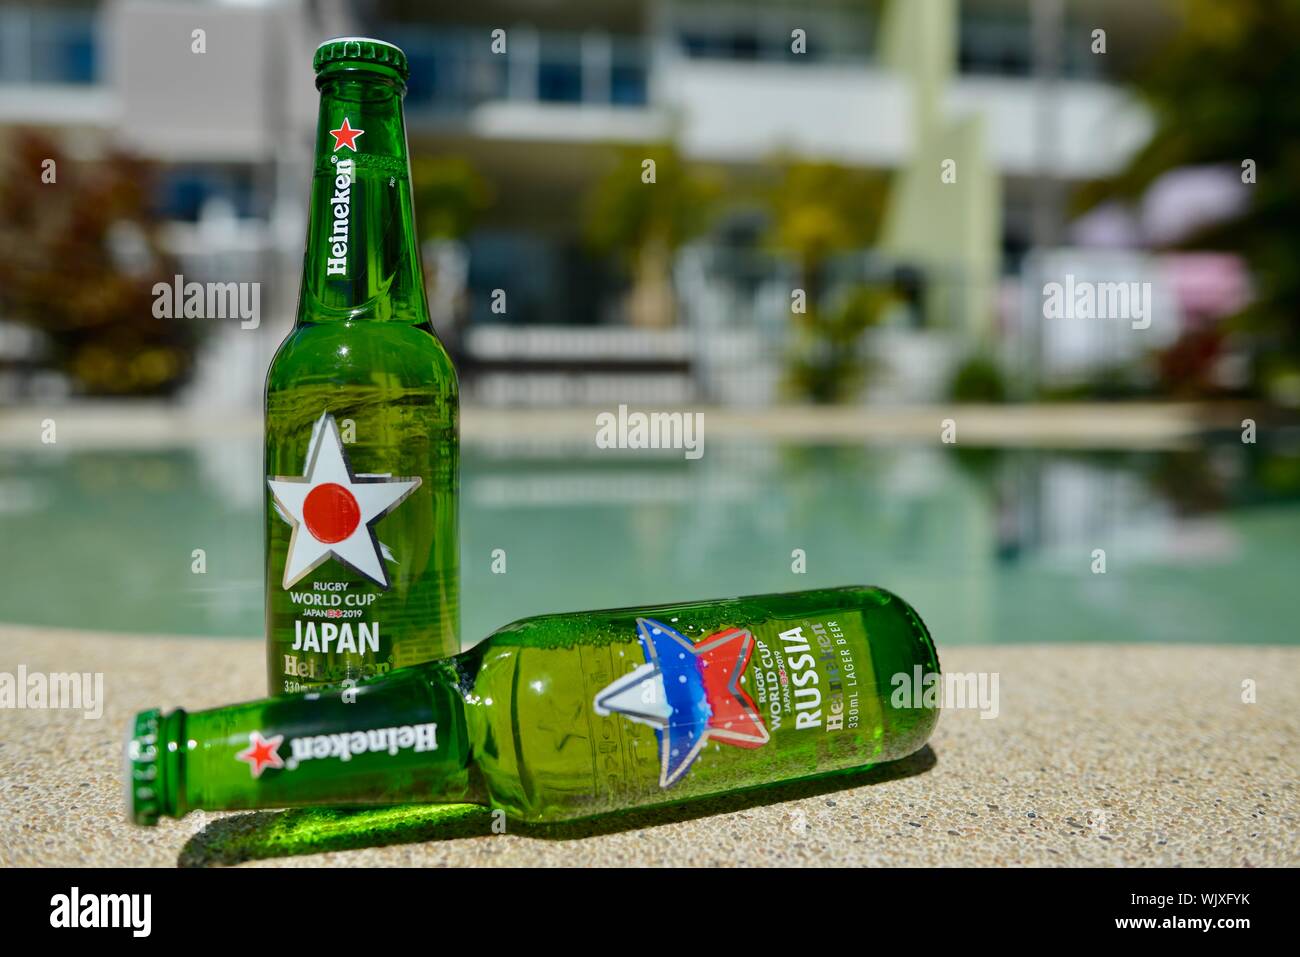 Japan versus Russia, Japan wins, Heineken 2019 Japan Rugby world cup beer bottles Stock Photo